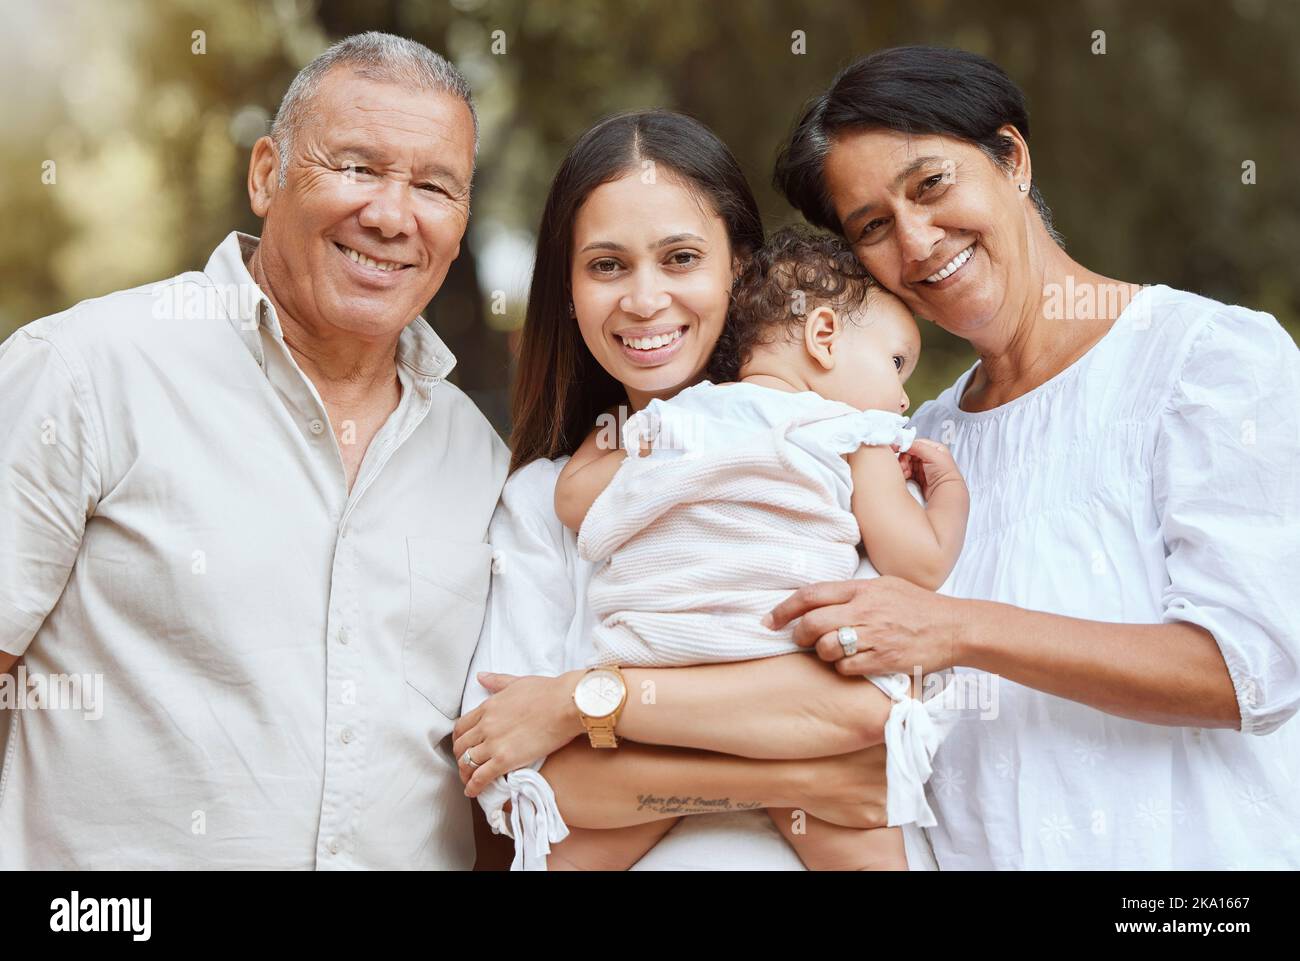 Retrato familiar, abuelos felices y madre recién nacida con sonrisa juntas, felicidad y orgullo. Familia negra al aire libre, niño pequeño con mamá Foto de stock